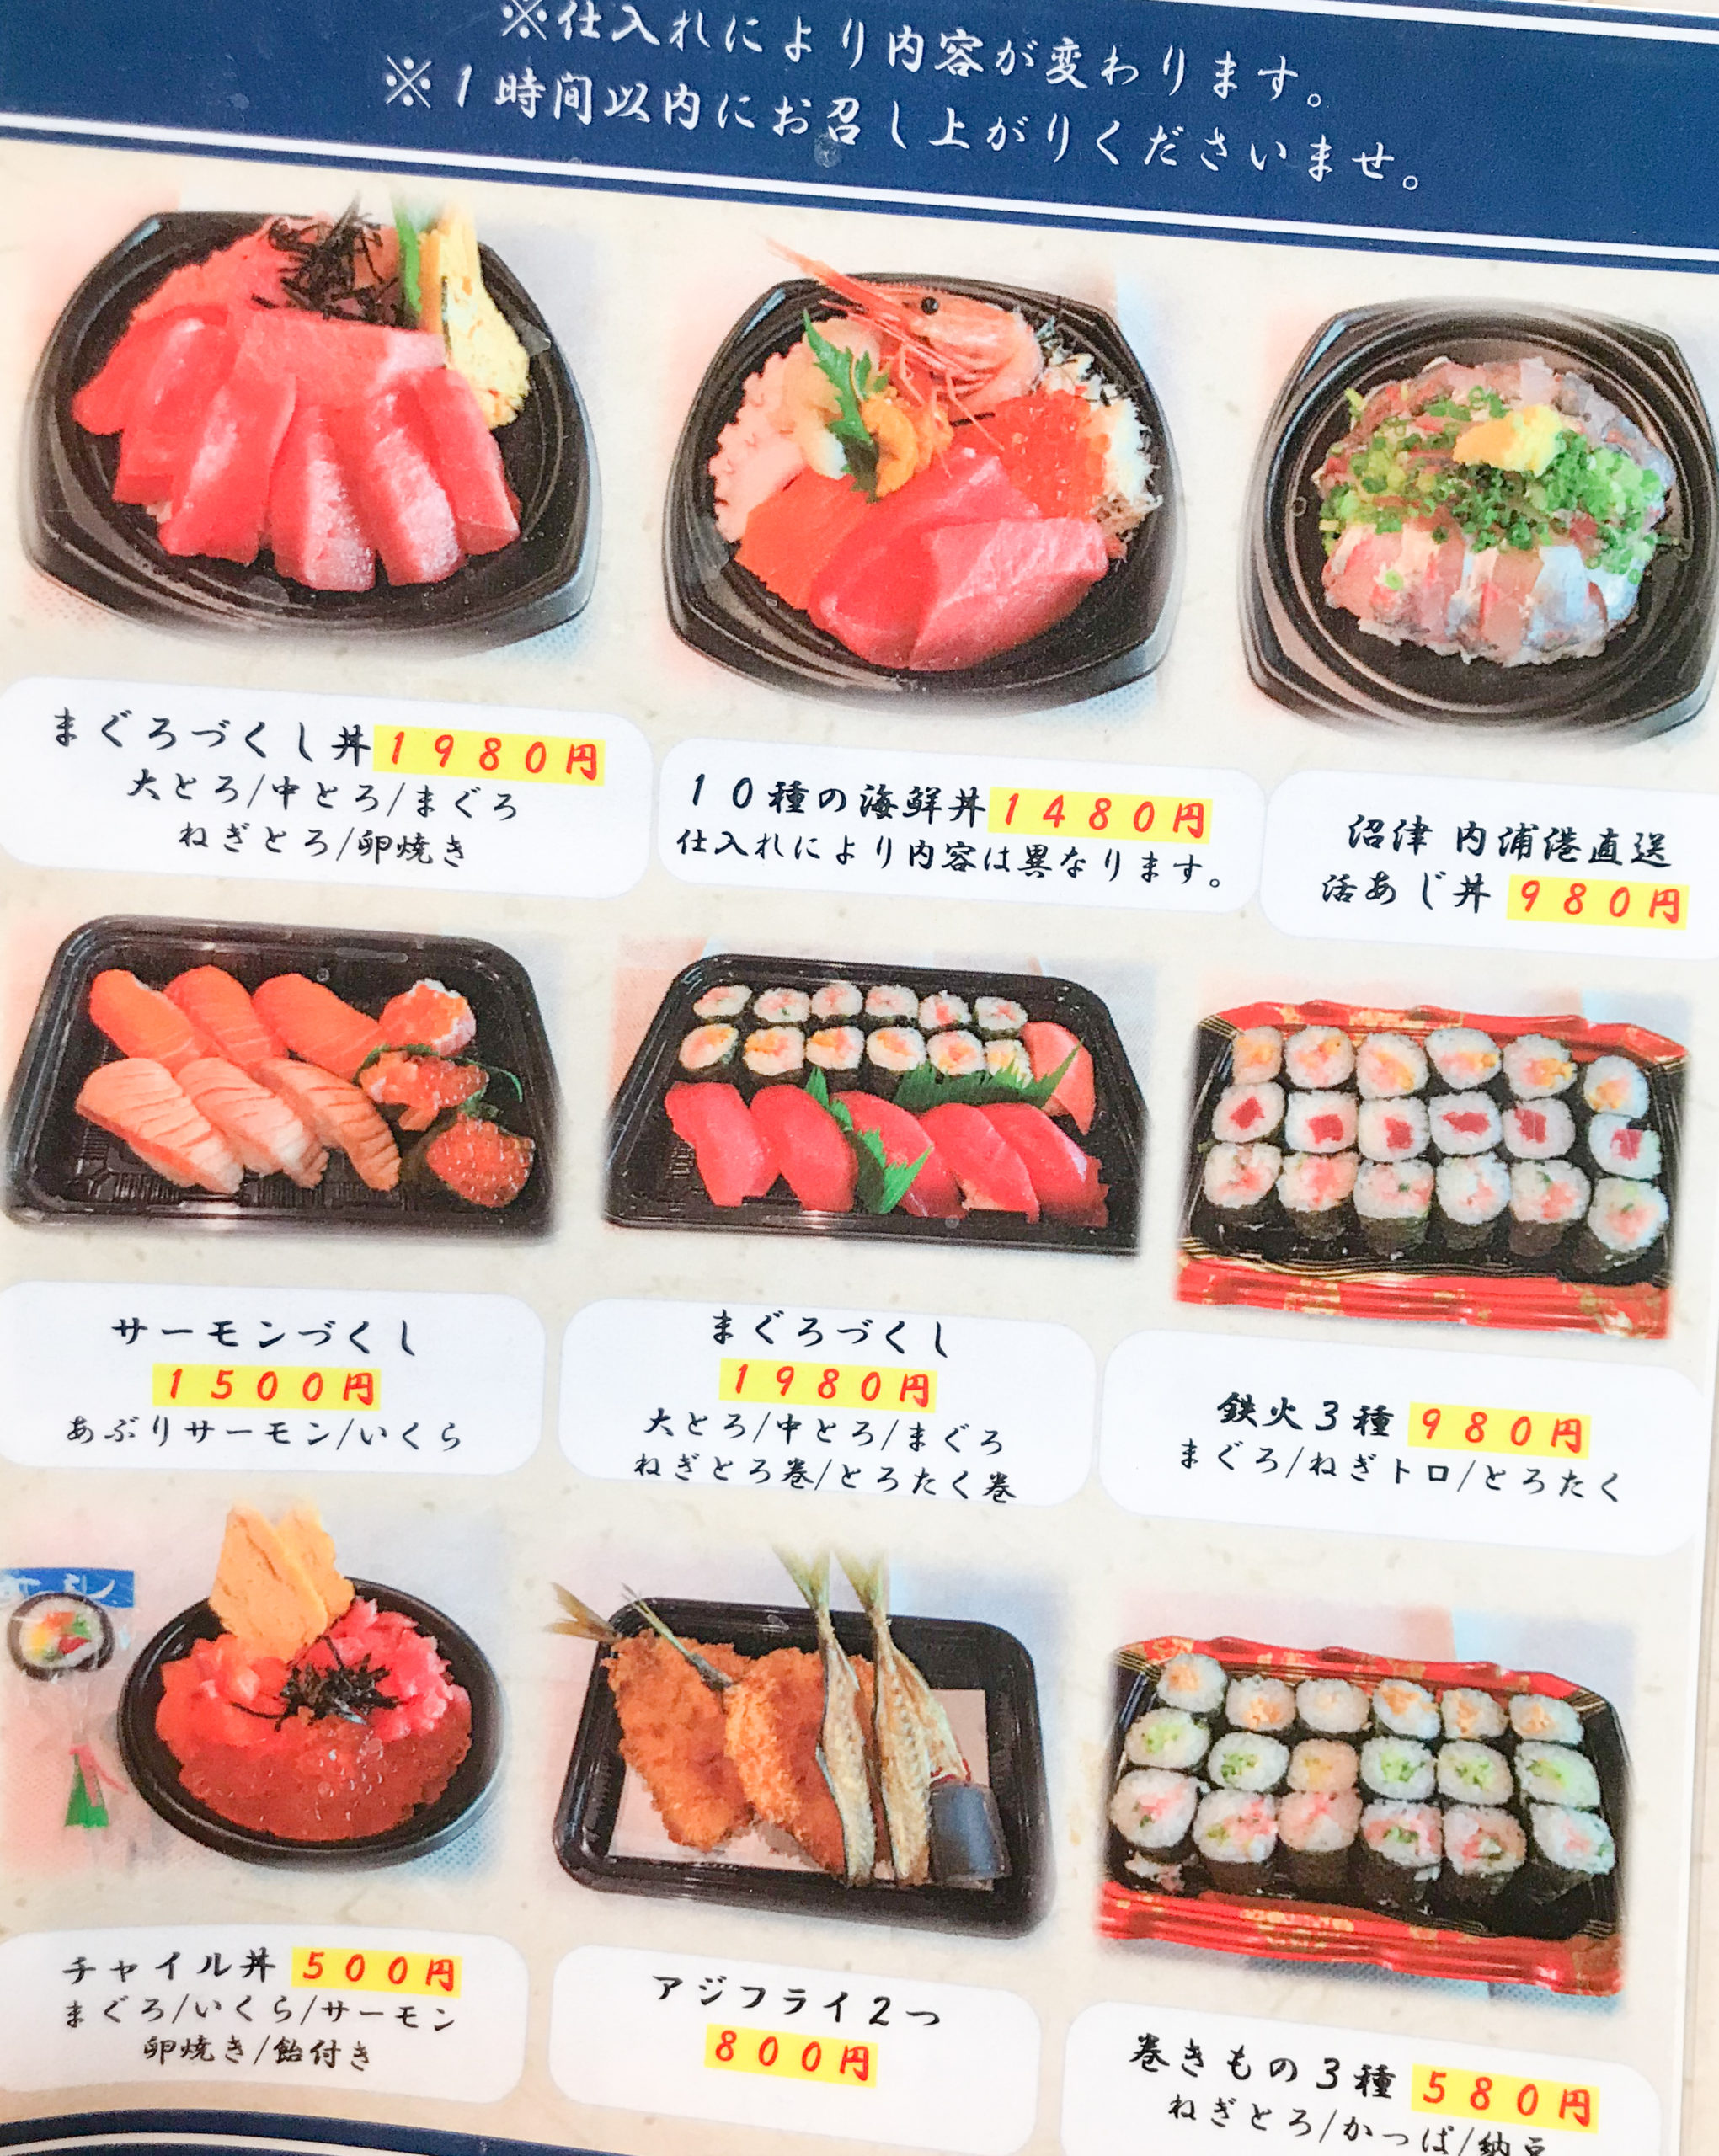 大宮市場 活あじ丼 内浦 で絶品アジフライと鯵丼を食らう 魚がしてんぷらといさば寿司の系列店